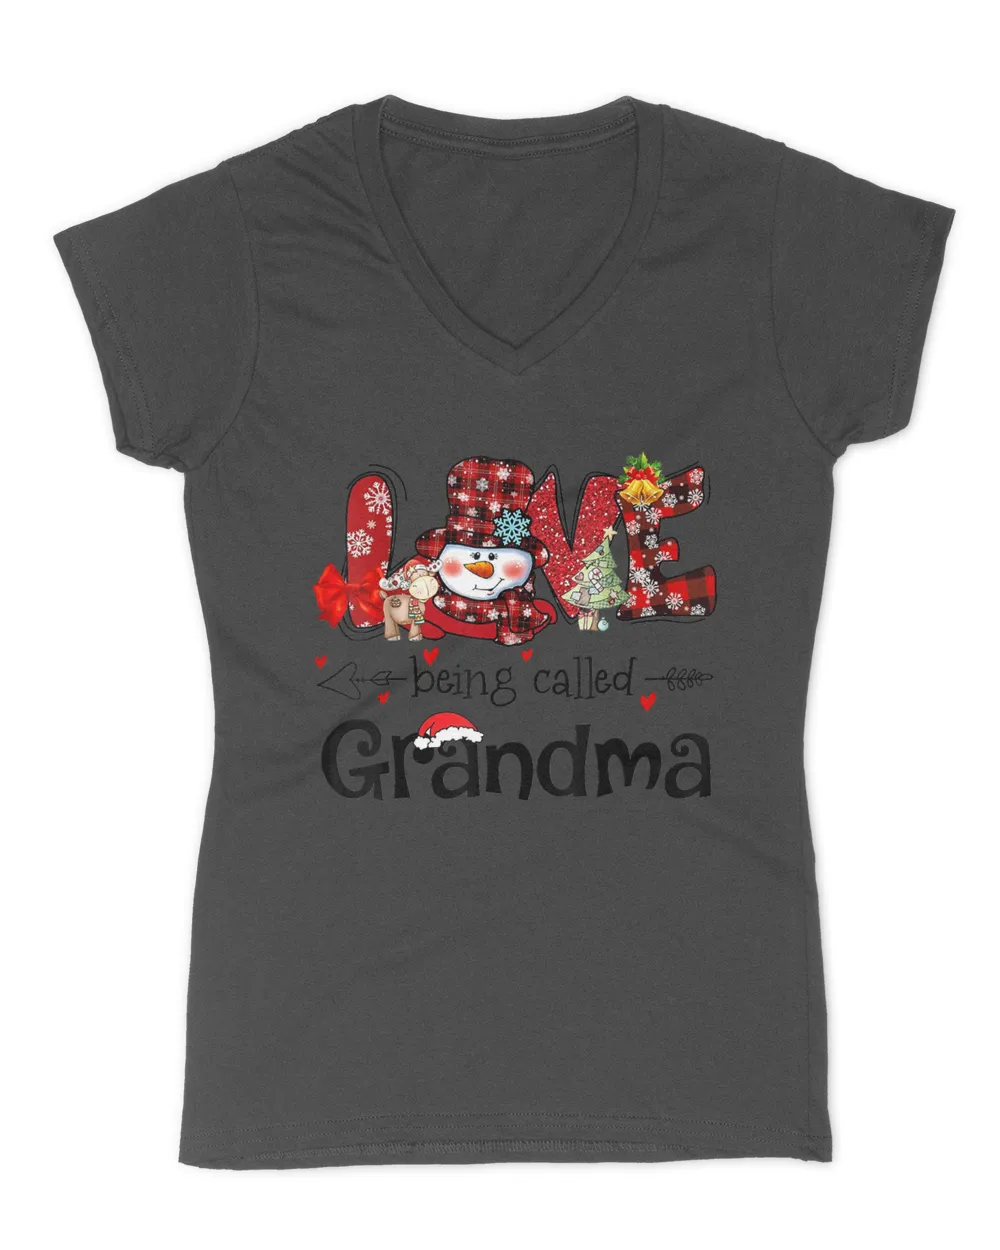 Love being called Grandma Snowman Christmas Red Plaid Xmas T-Shirt